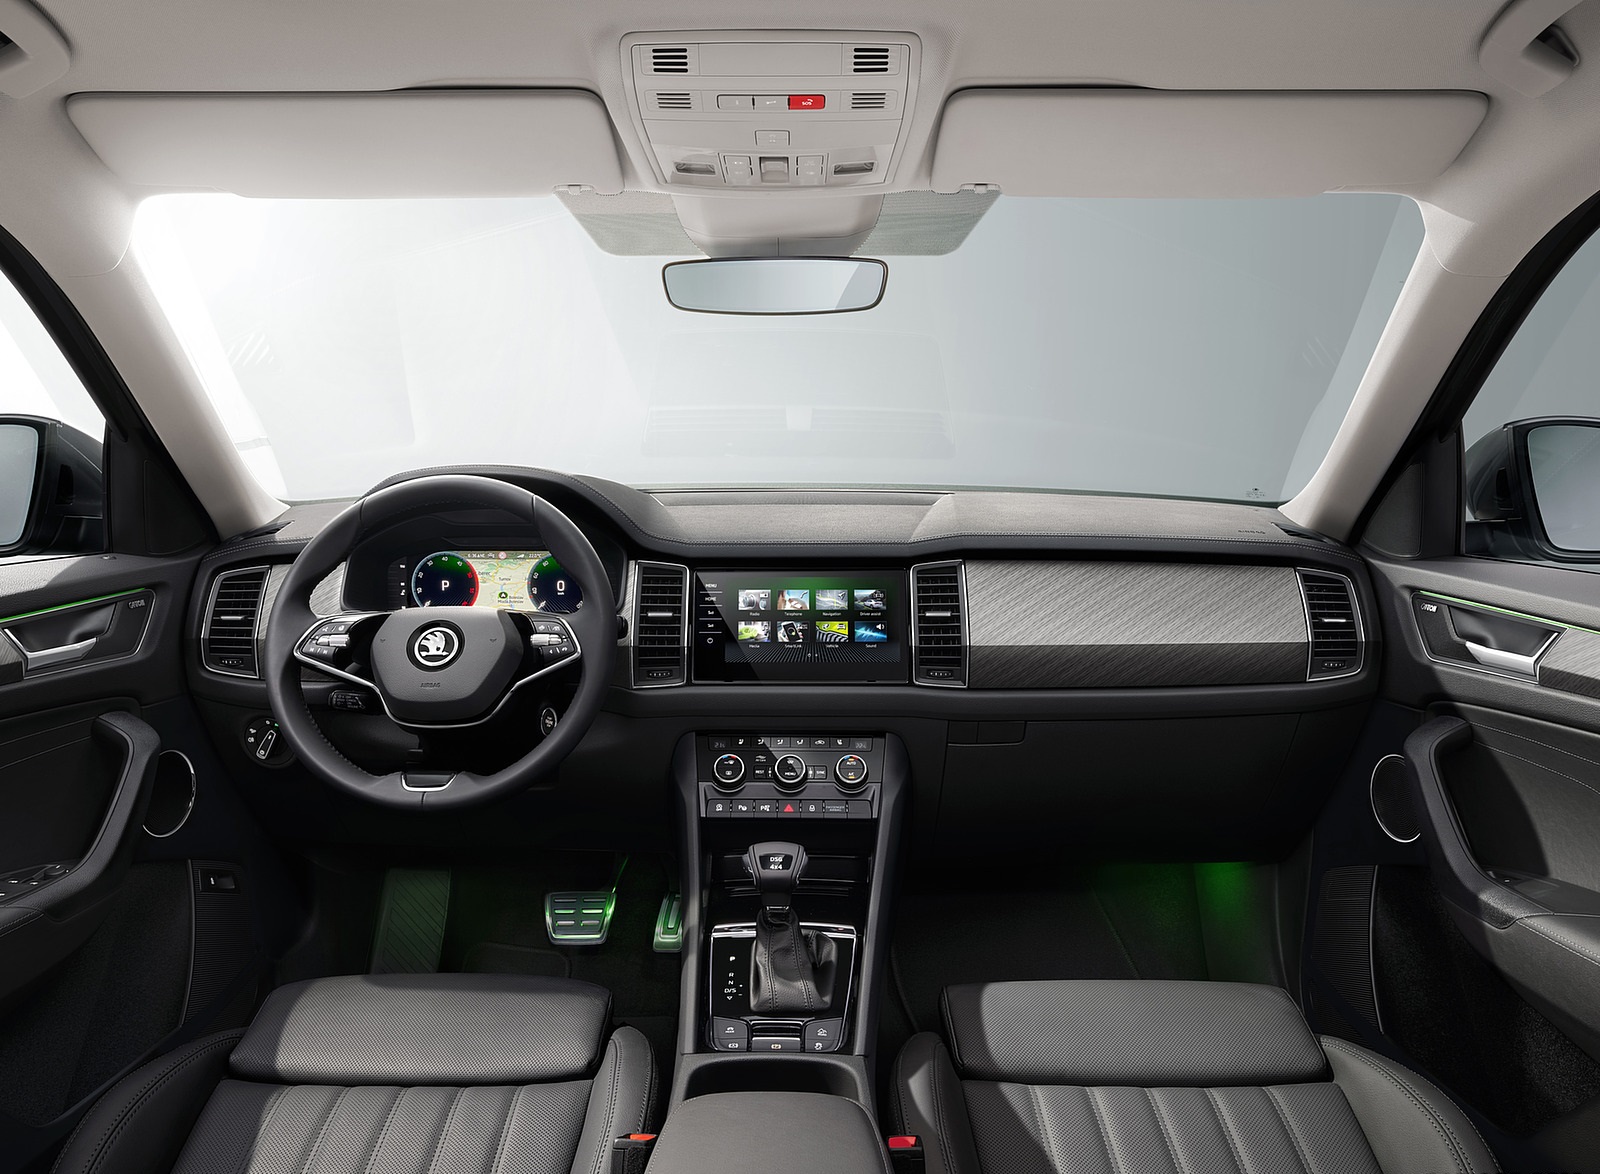 2021 Škoda Kodiaq Interior Cockpit Wallpapers #35 of 59